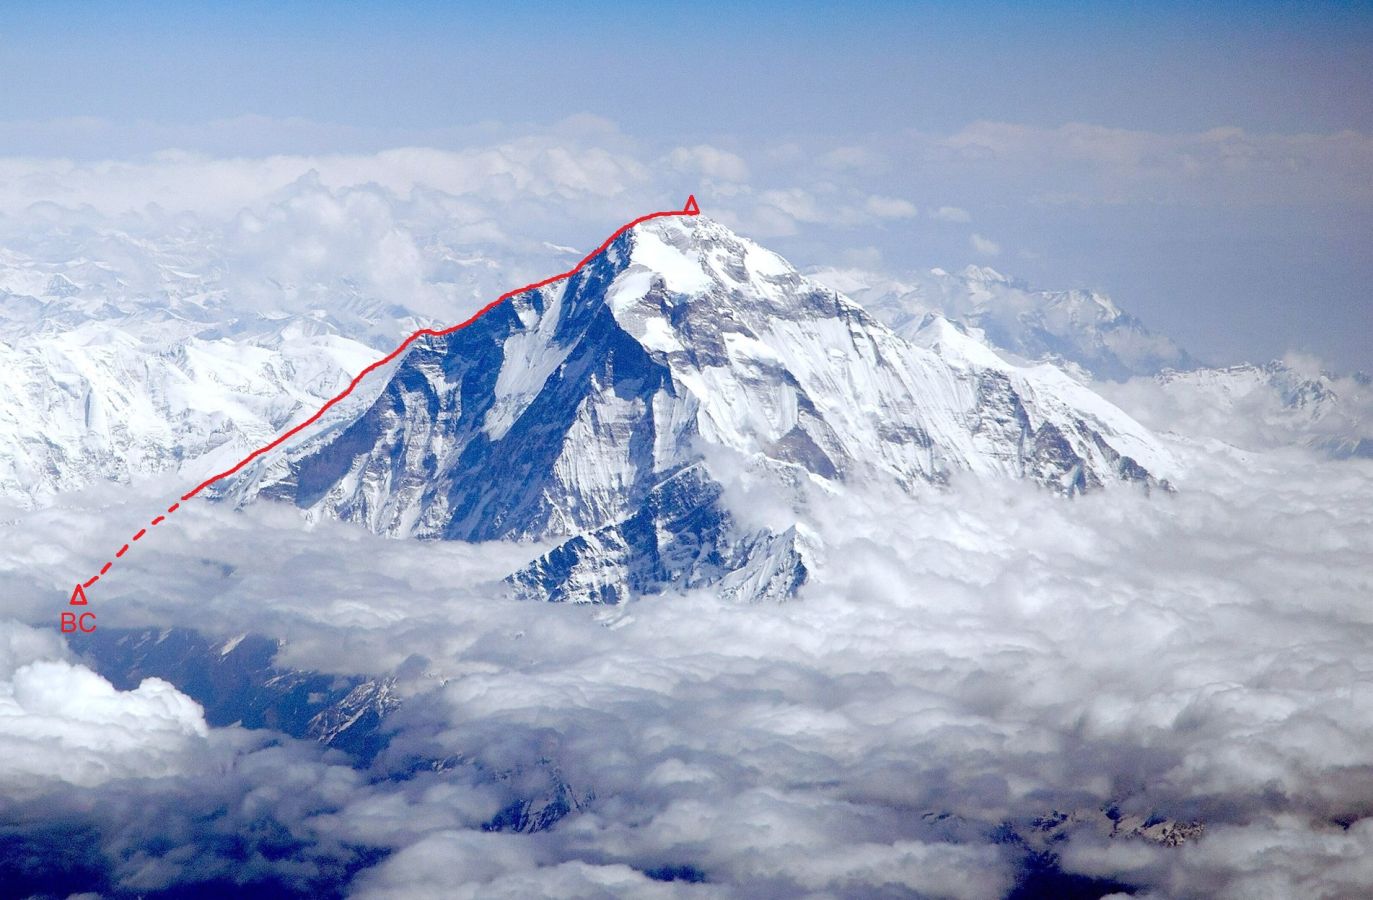 Планируемый новый маршрут  на Северо-Западном хребте восьмитысячника Дхаулагири (Dhaulagiri, 8167 м) - седьмой по высоте вершине в мире